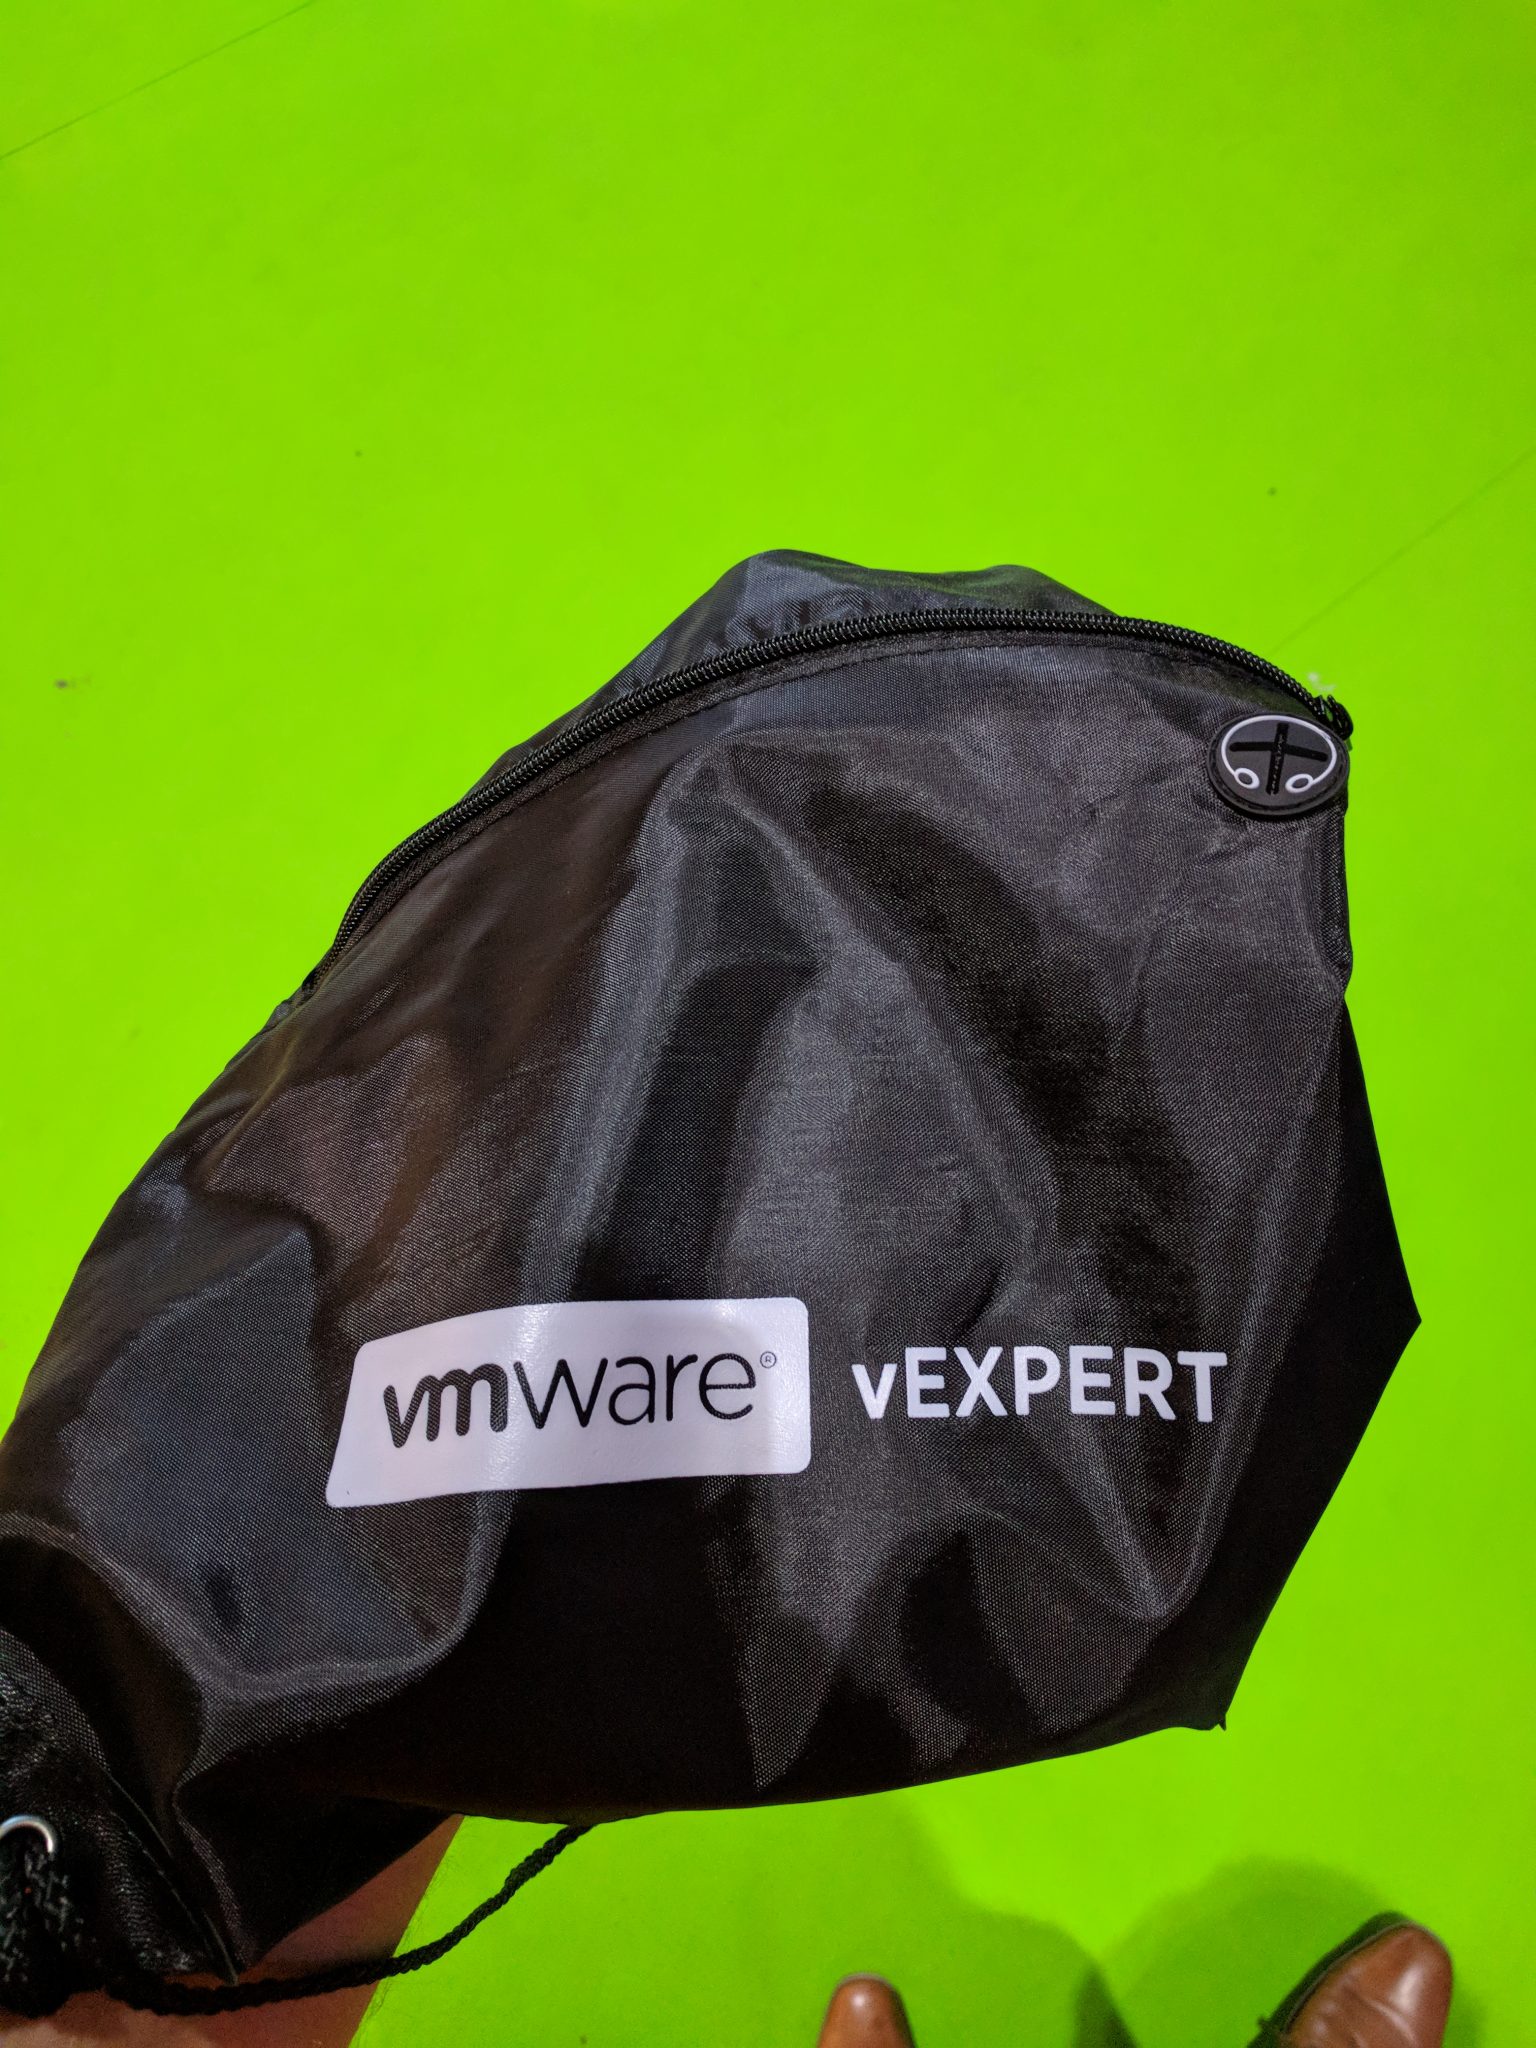 VMware 2018 EU - vExpert Bag